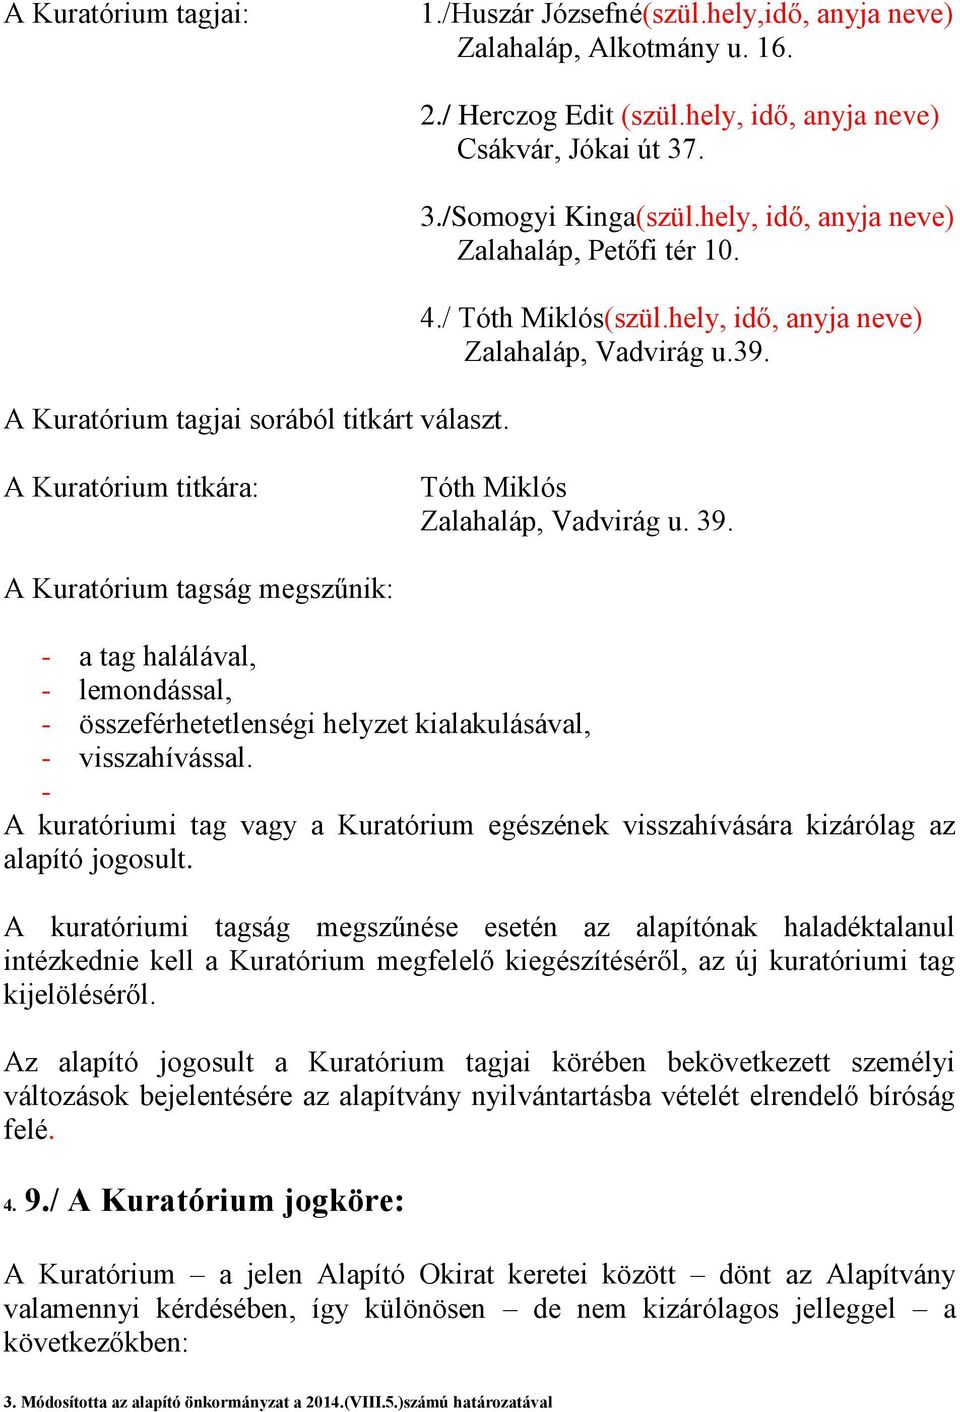 A Kuratórium titkára: Tóth Miklós Zalahaláp, Vadvirág u. 39. A Kuratórium tagság megszűnik: - a tag halálával, - lemondással, - összeférhetetlenségi helyzet kialakulásával, - visszahívással.